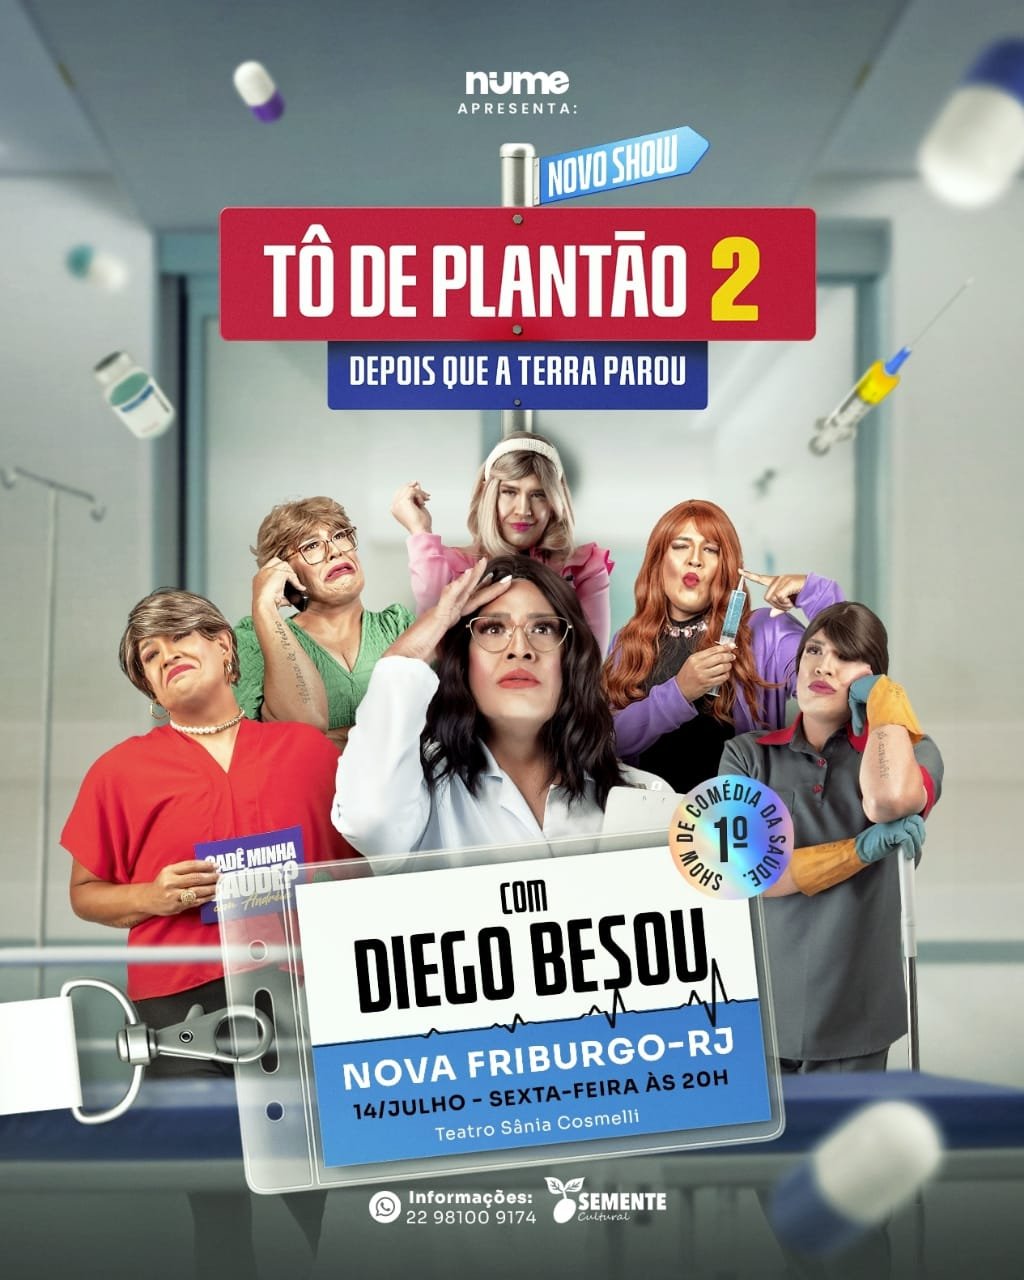 Nova Friburgo recebe o humorista Diego Besou em “Tô de Plantão 2”